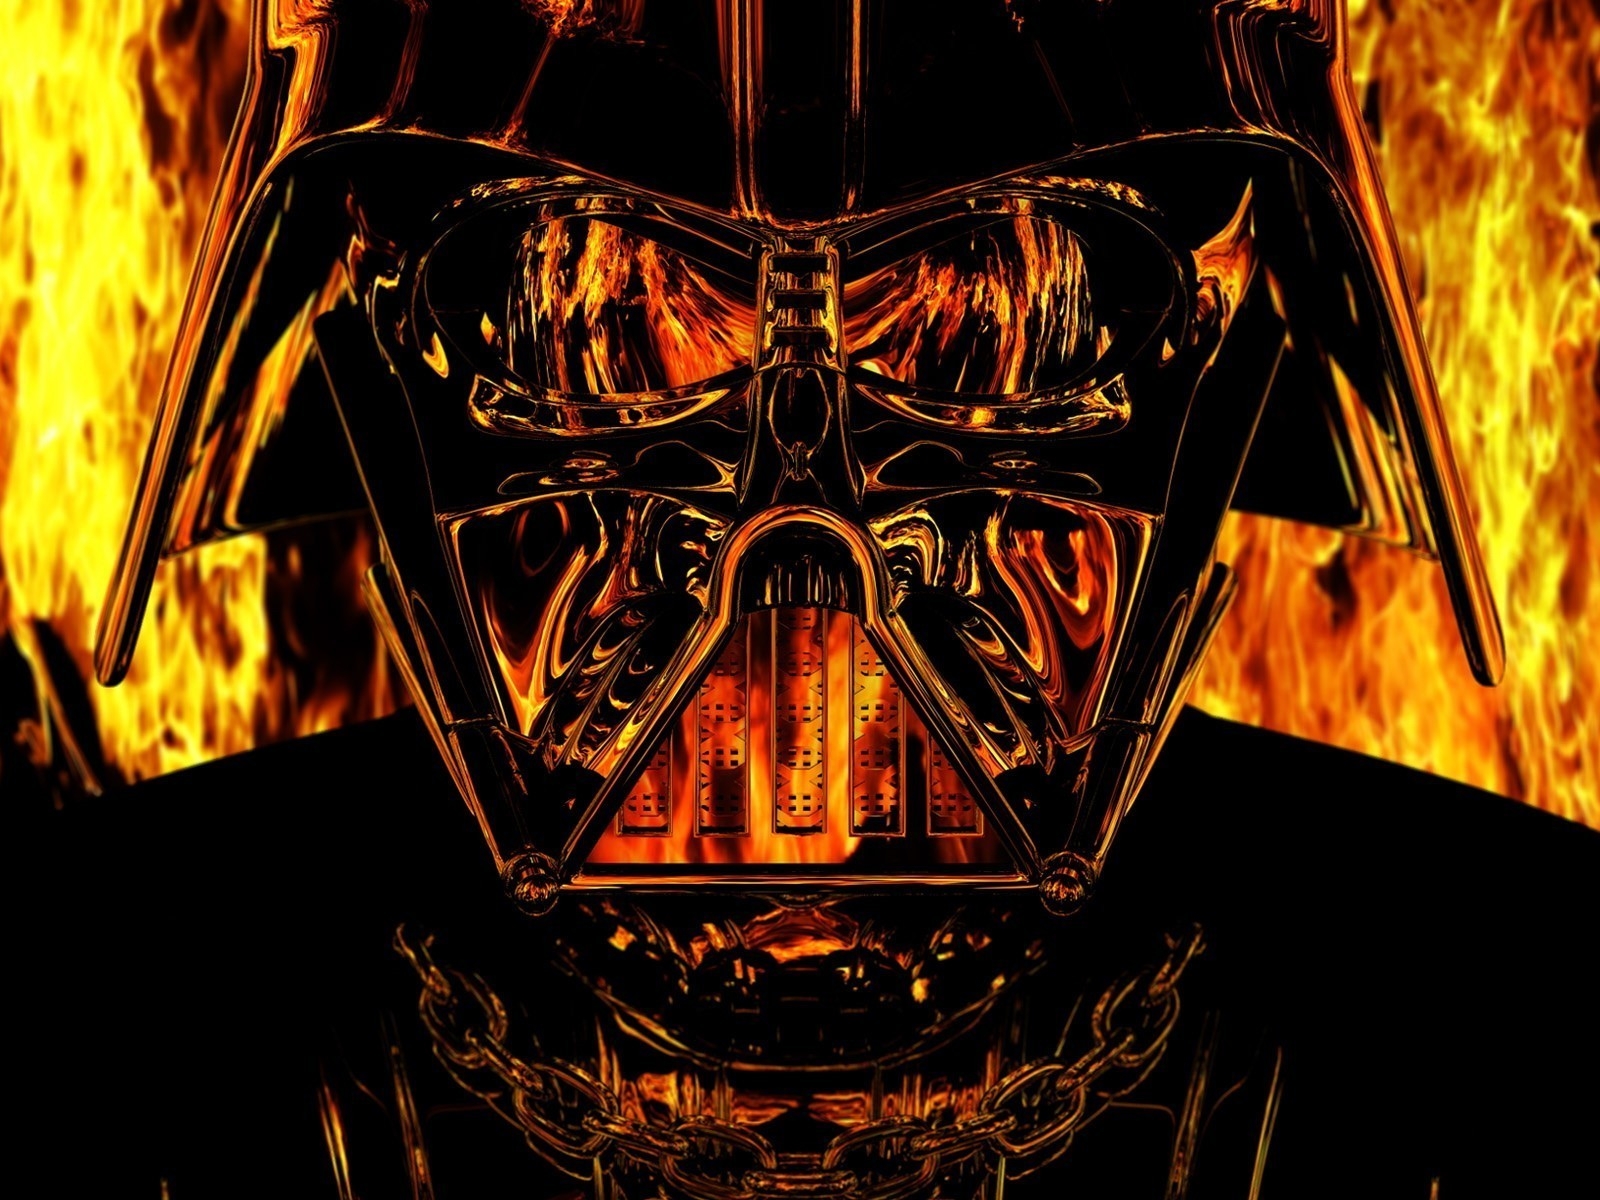 Darth Vader Star Wars for 1600 x 1200 resolution